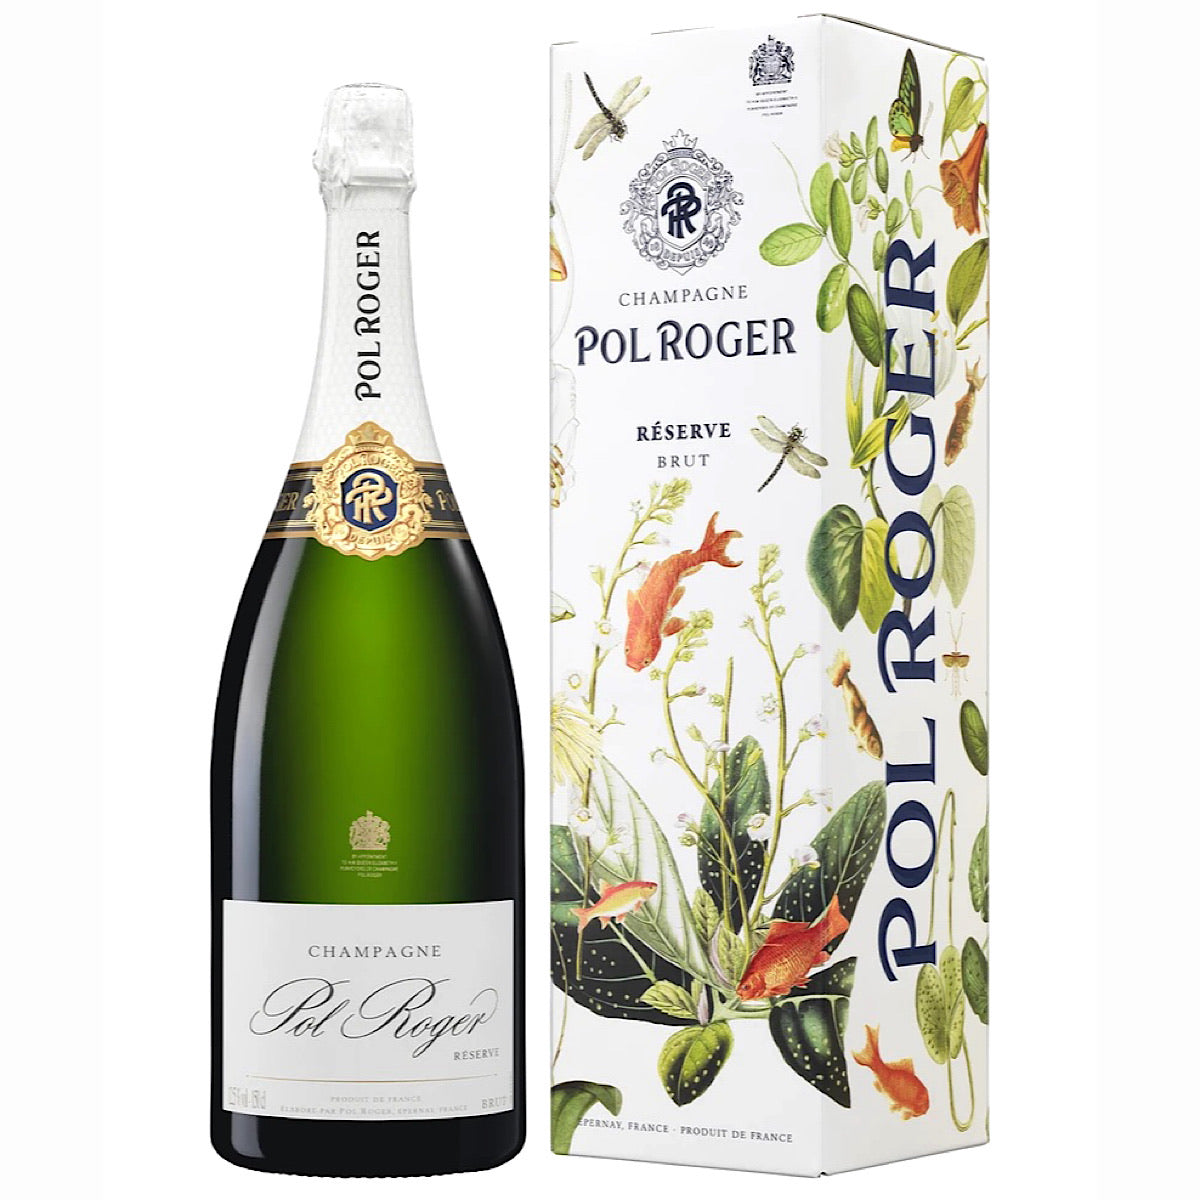 Pol Roger Brut Reserve NV Champagne GIft Box MAGNUM 1.5 ltr